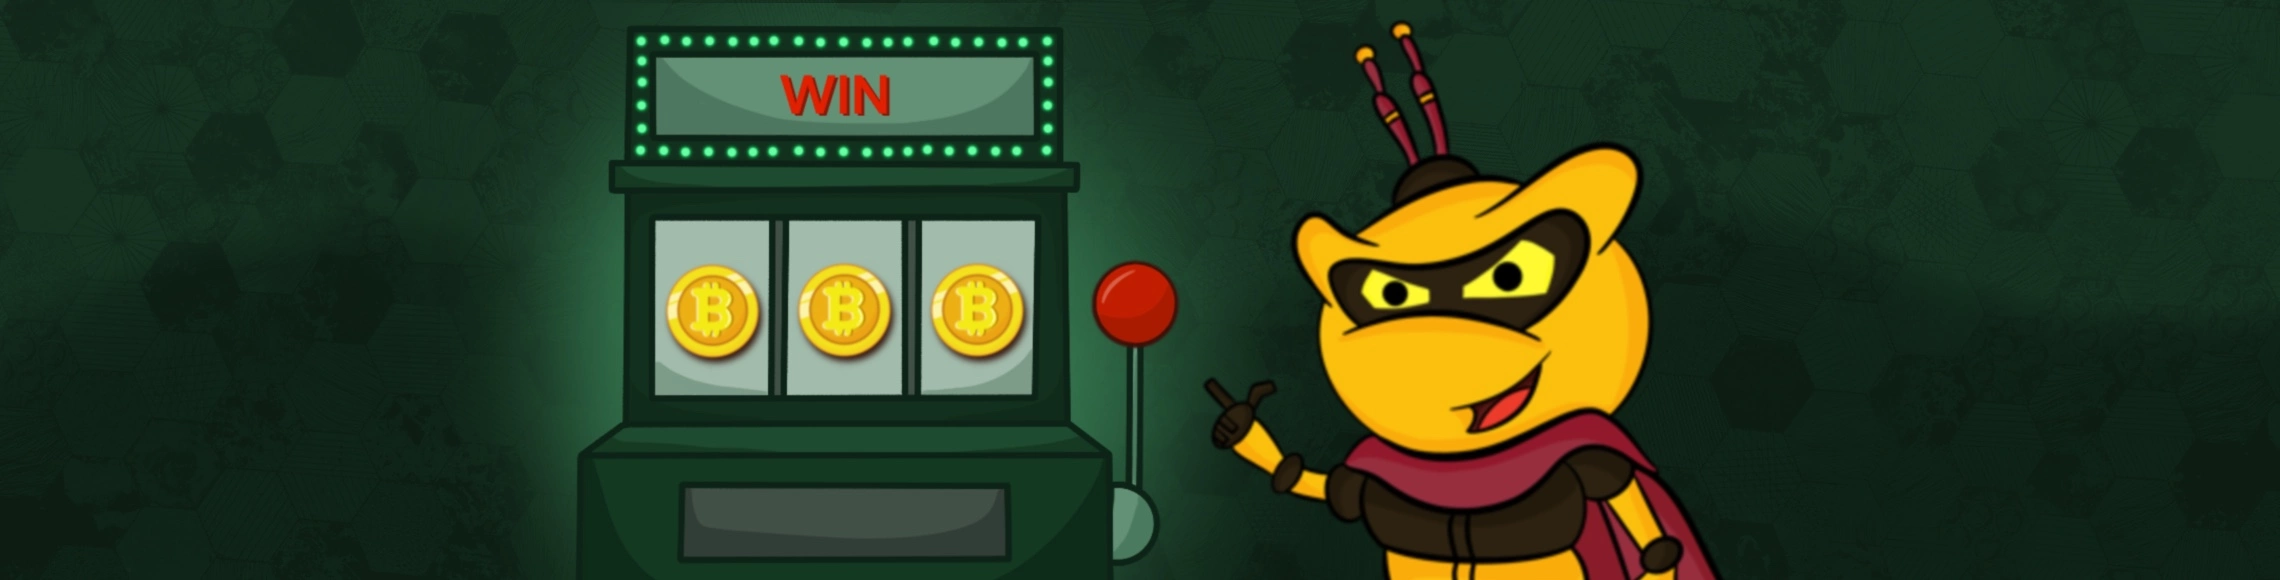 10 geheime Dinge, von denen Sie nichts wussten Seriöse Bitcoin Casinos